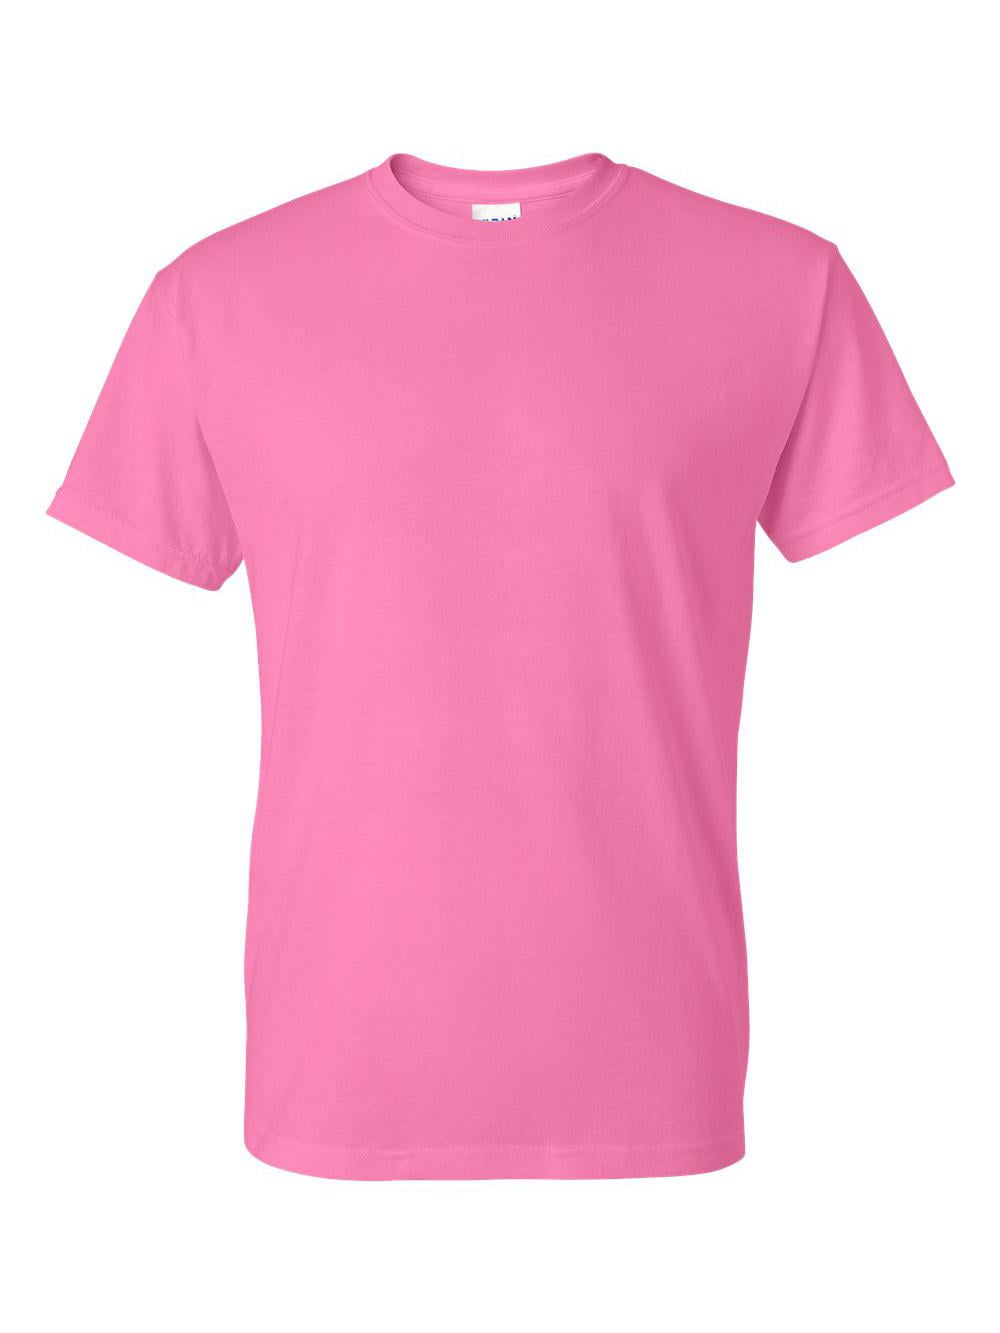 Gildan - DryBlend T-Shirt - 8000 - Azalea - Size: XL 